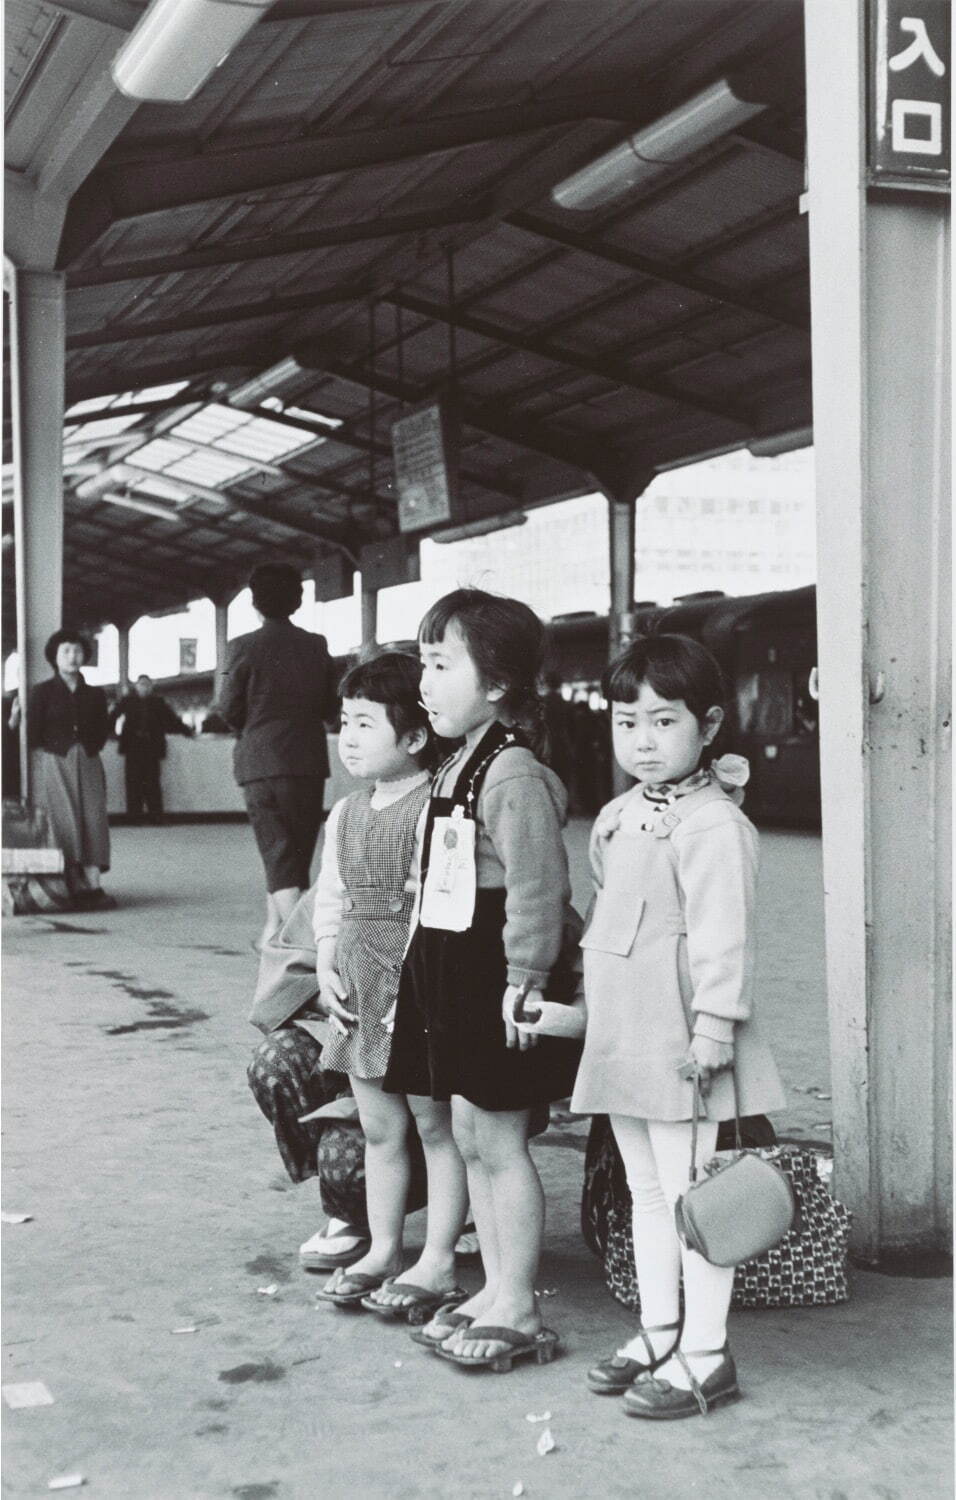 ロバート・キャパ 《東京駅のプラットホームで一緒に電車を待つ子どもたち、東京、日本》
1954年4月 東京富士美術館蔵